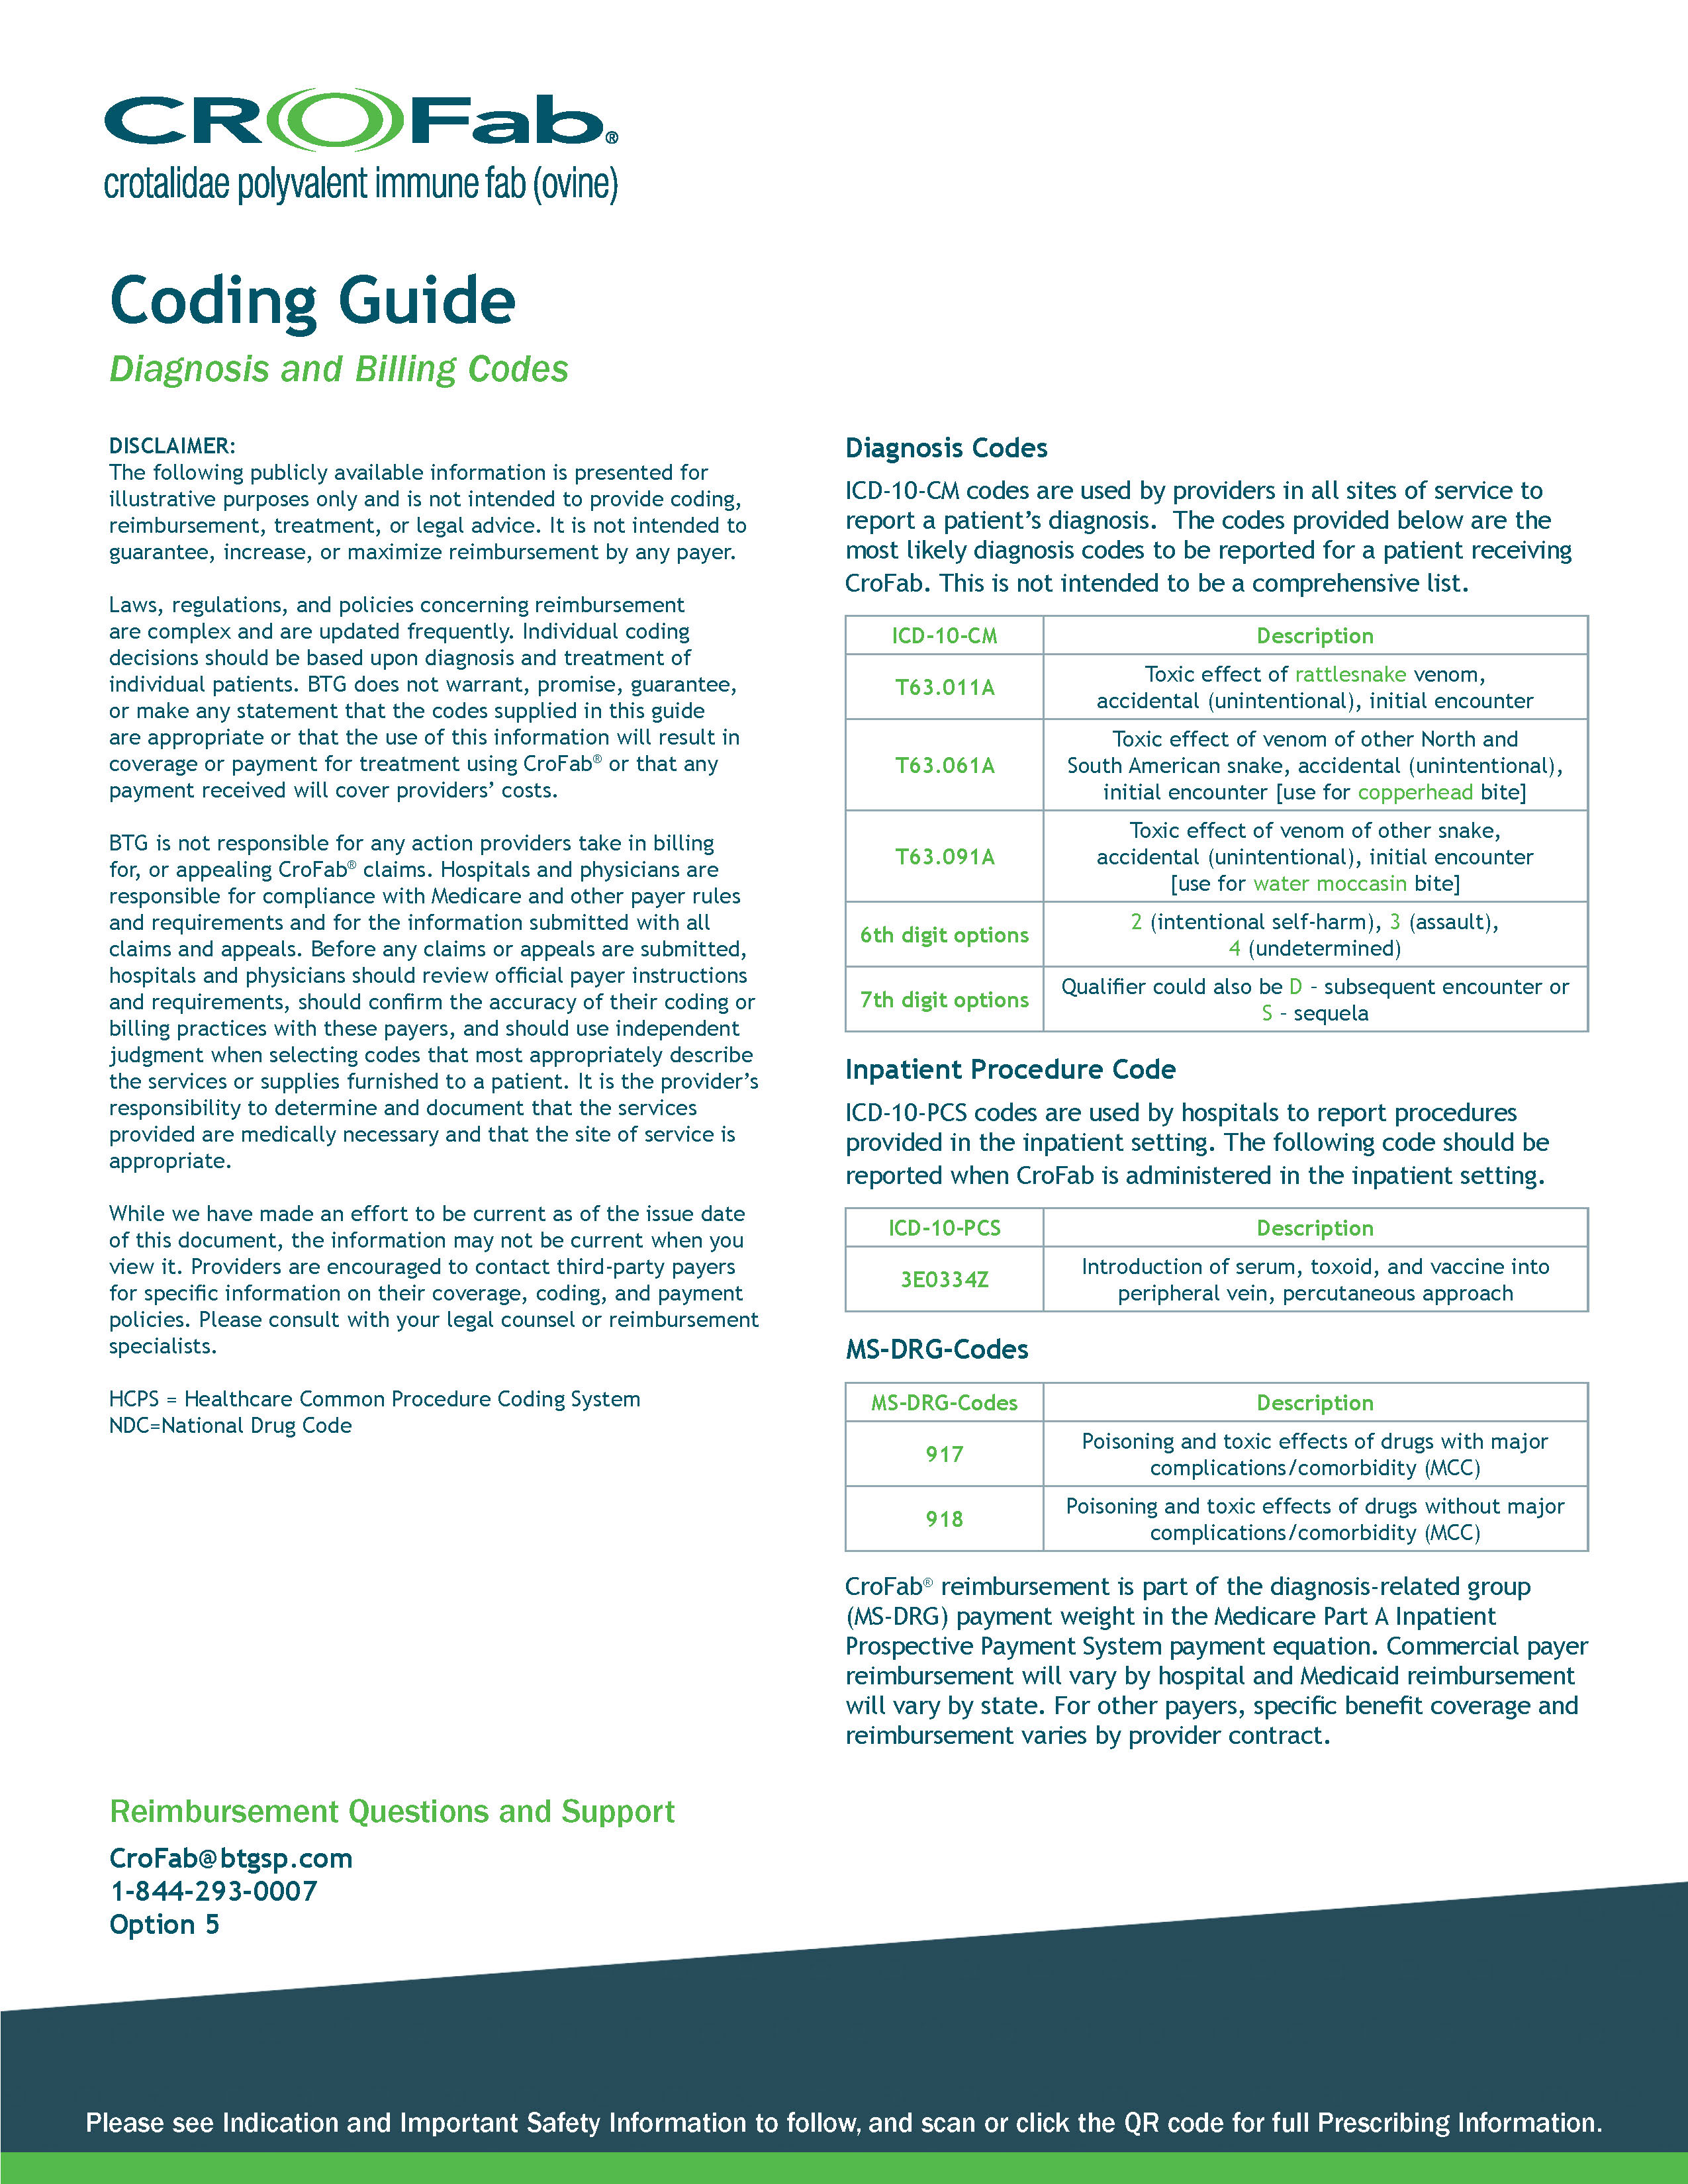 CroFab Coding Guide thumbnail